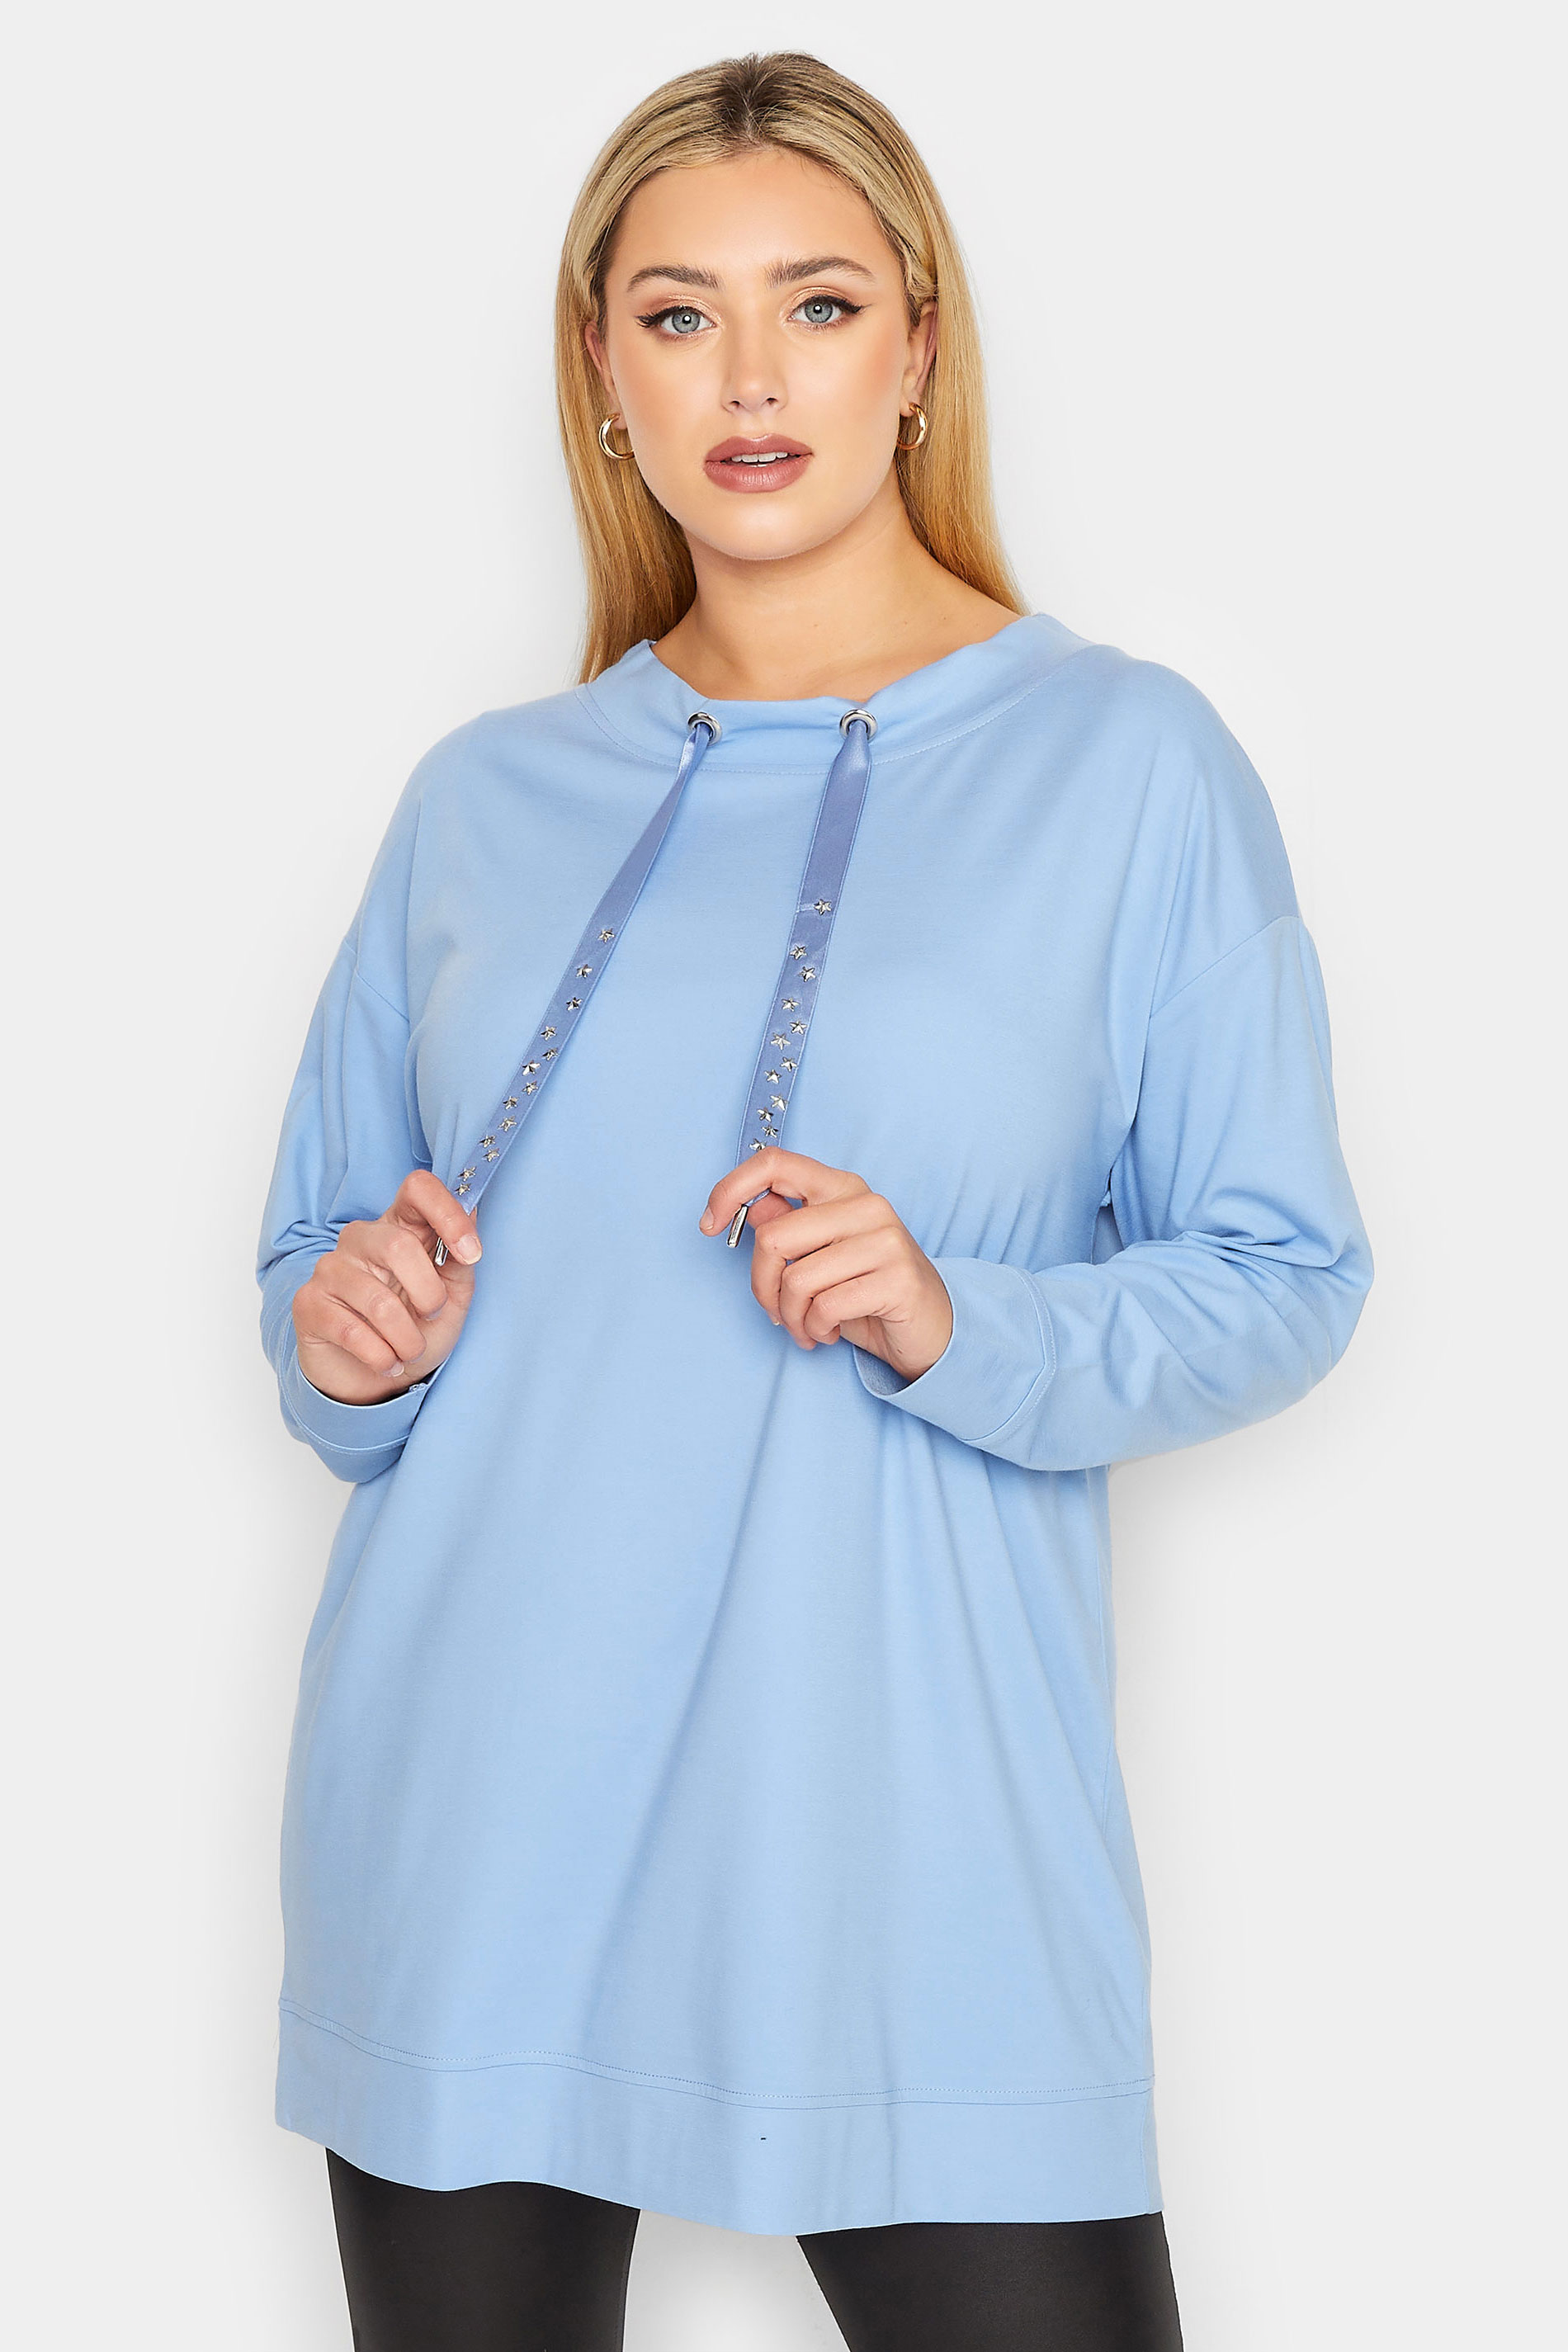 YOURS LUXURY Plus Size Blue Star Embellished Sweatshirt | Yours Clothing 2